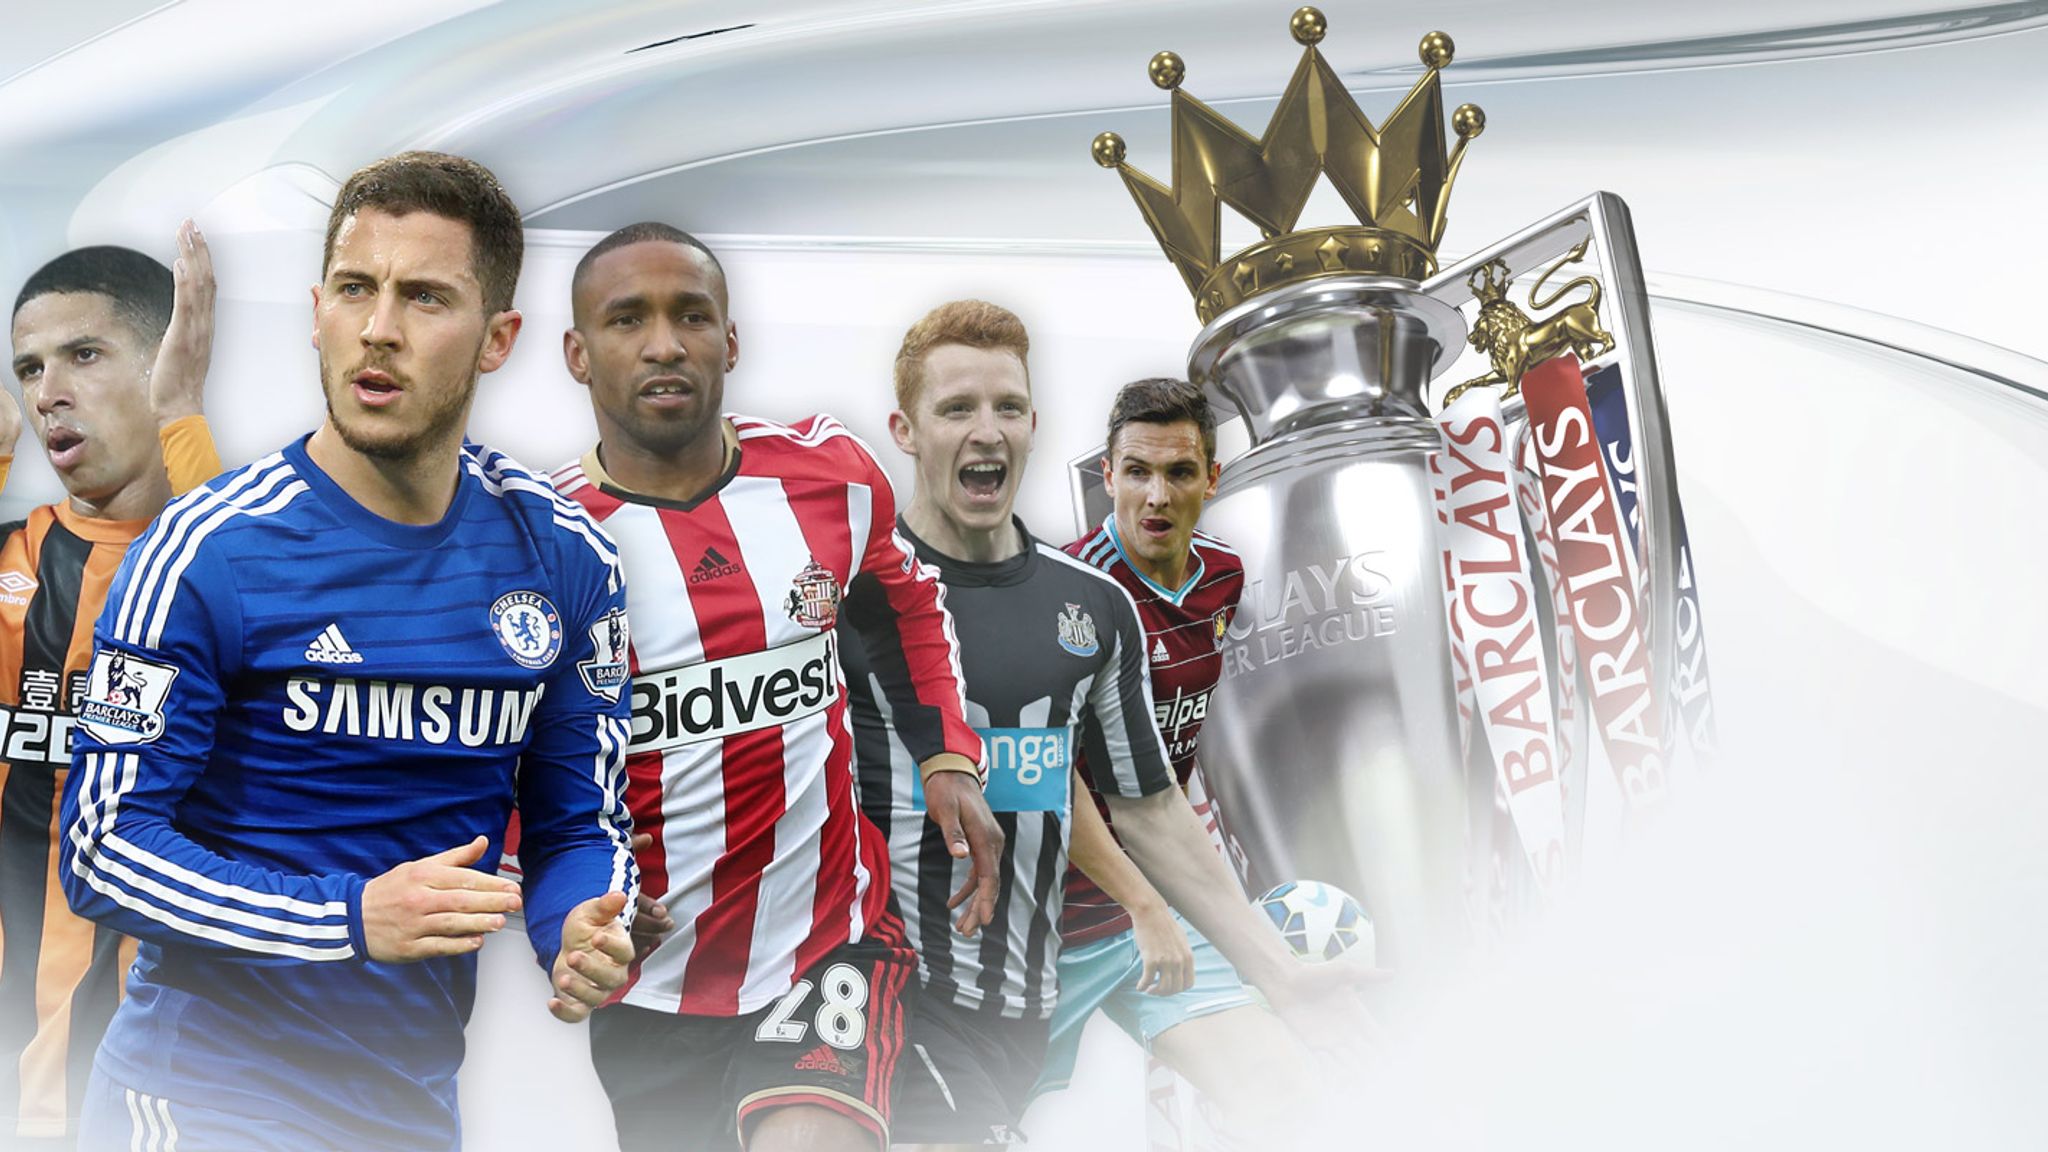 Premier league 2014 15